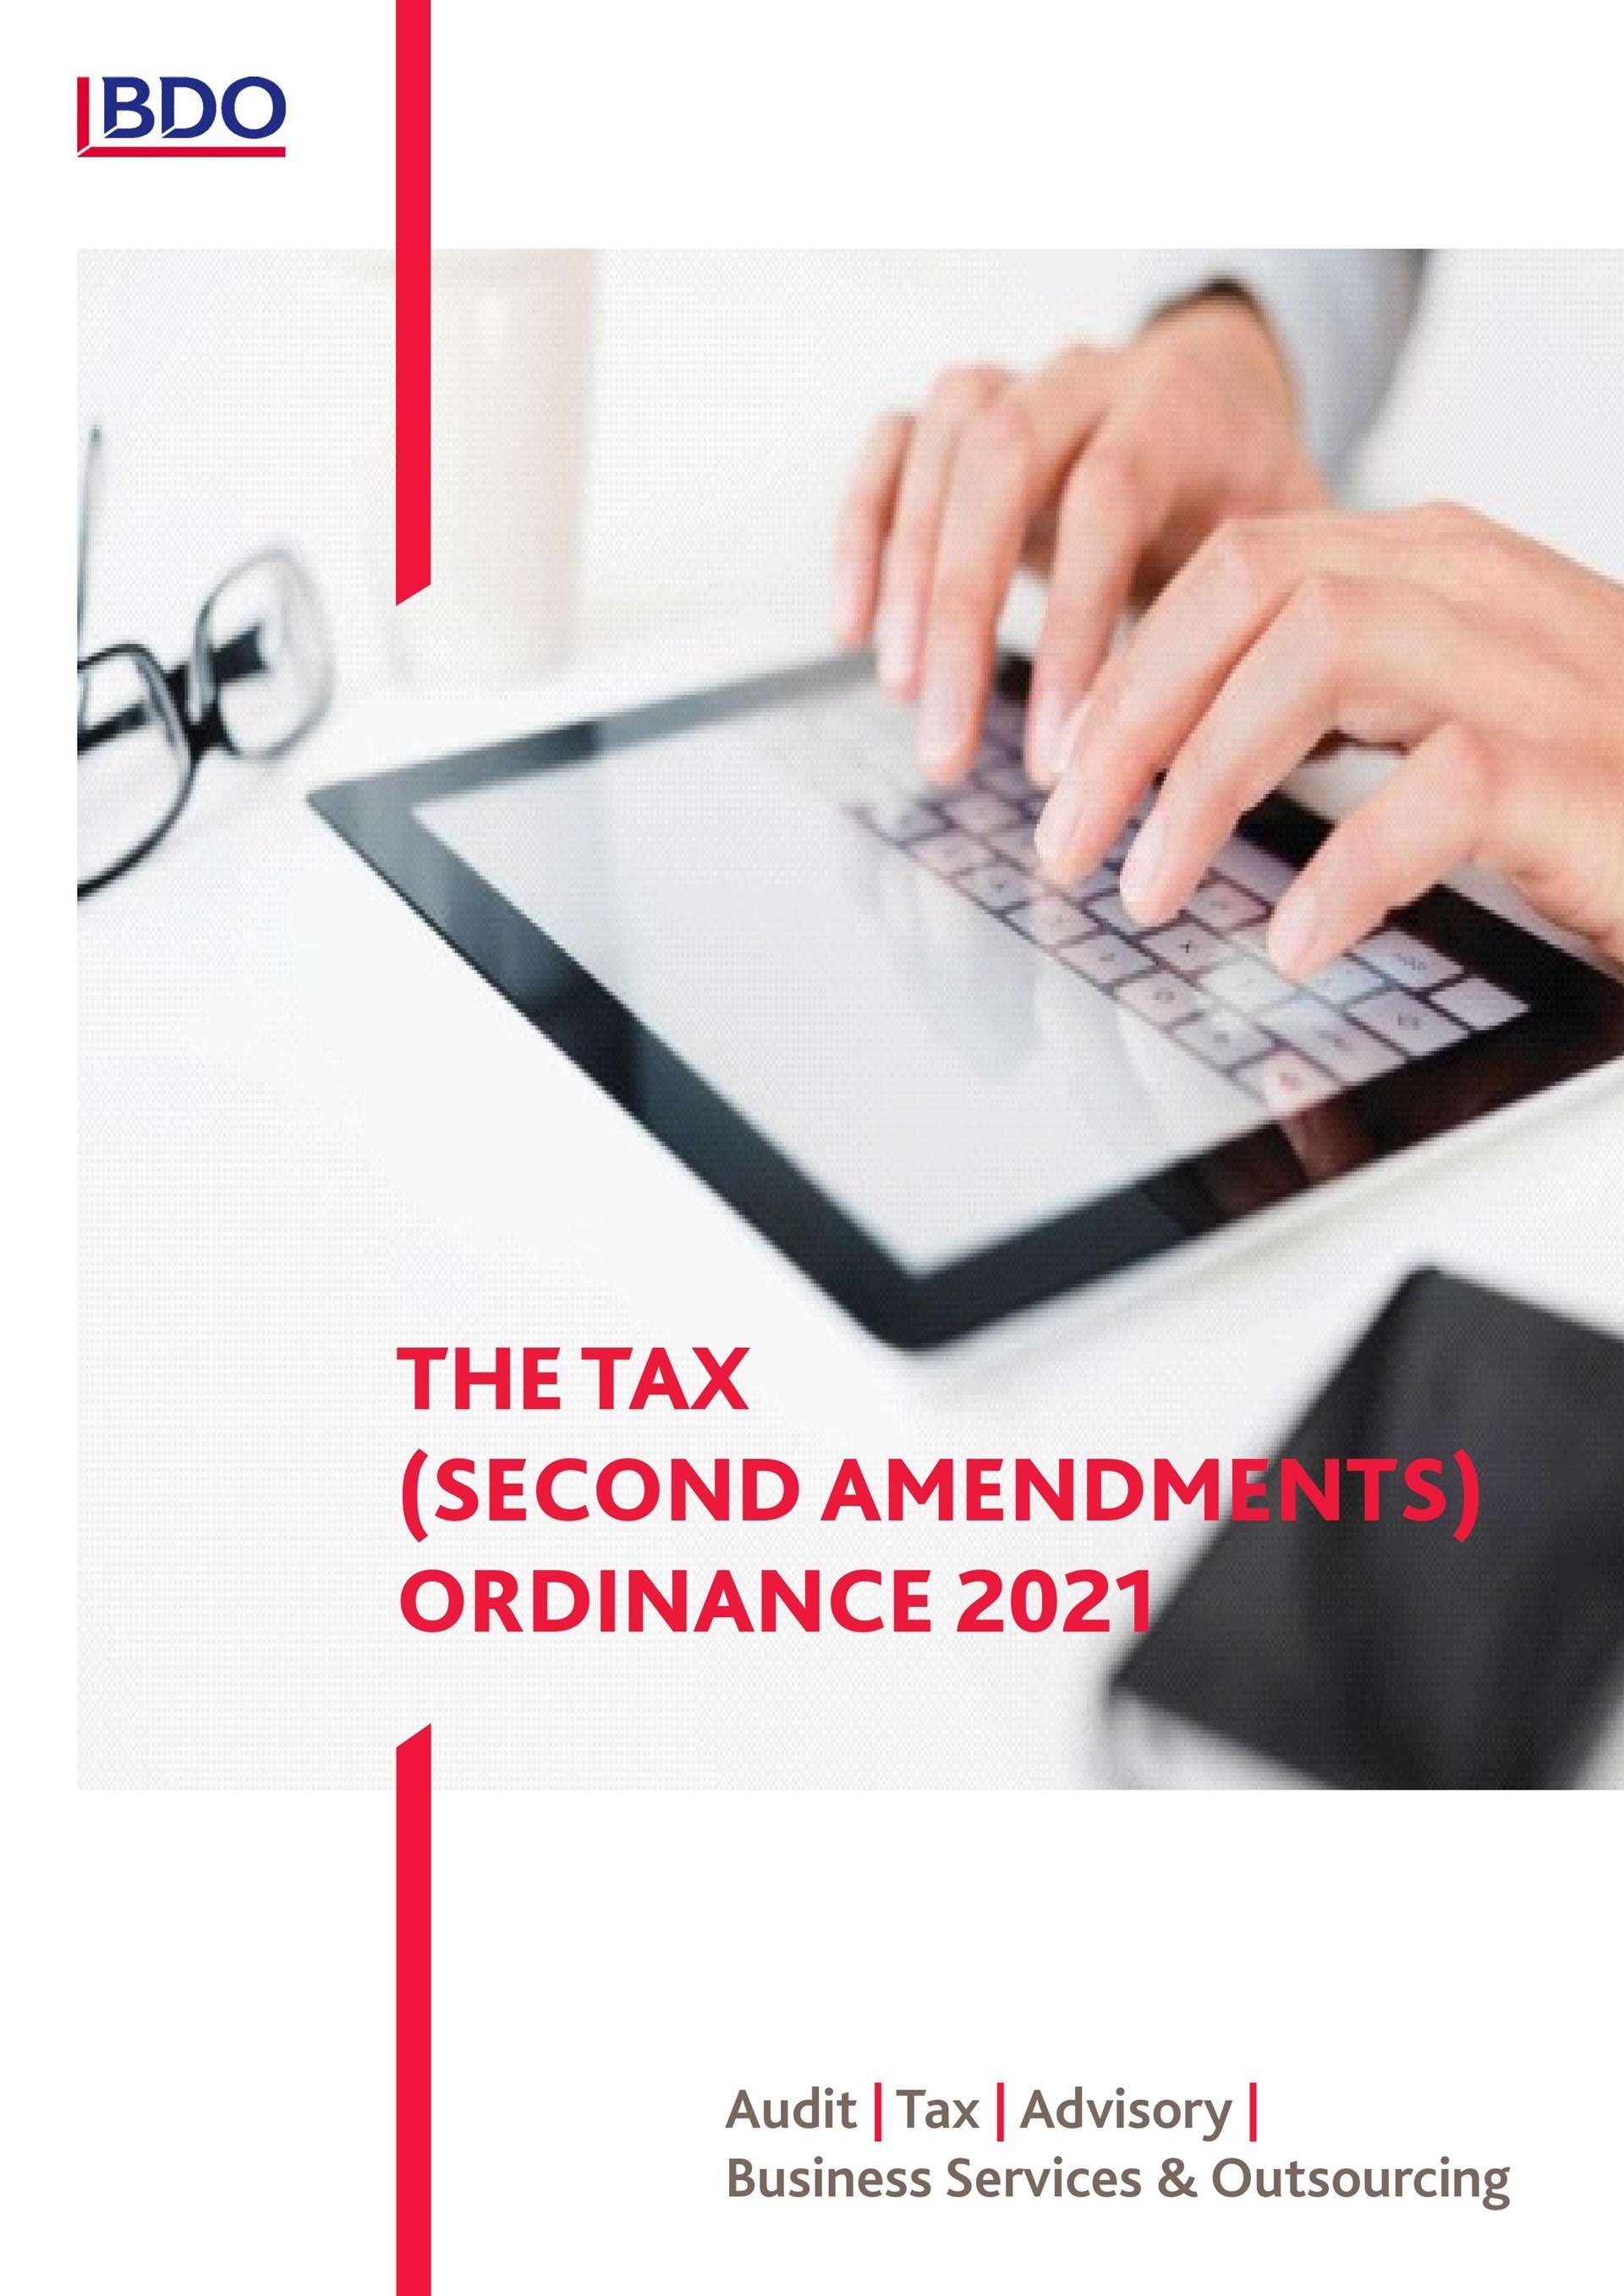 TAX LAWS SECOND AMENDMENT ORDINANCE 2021